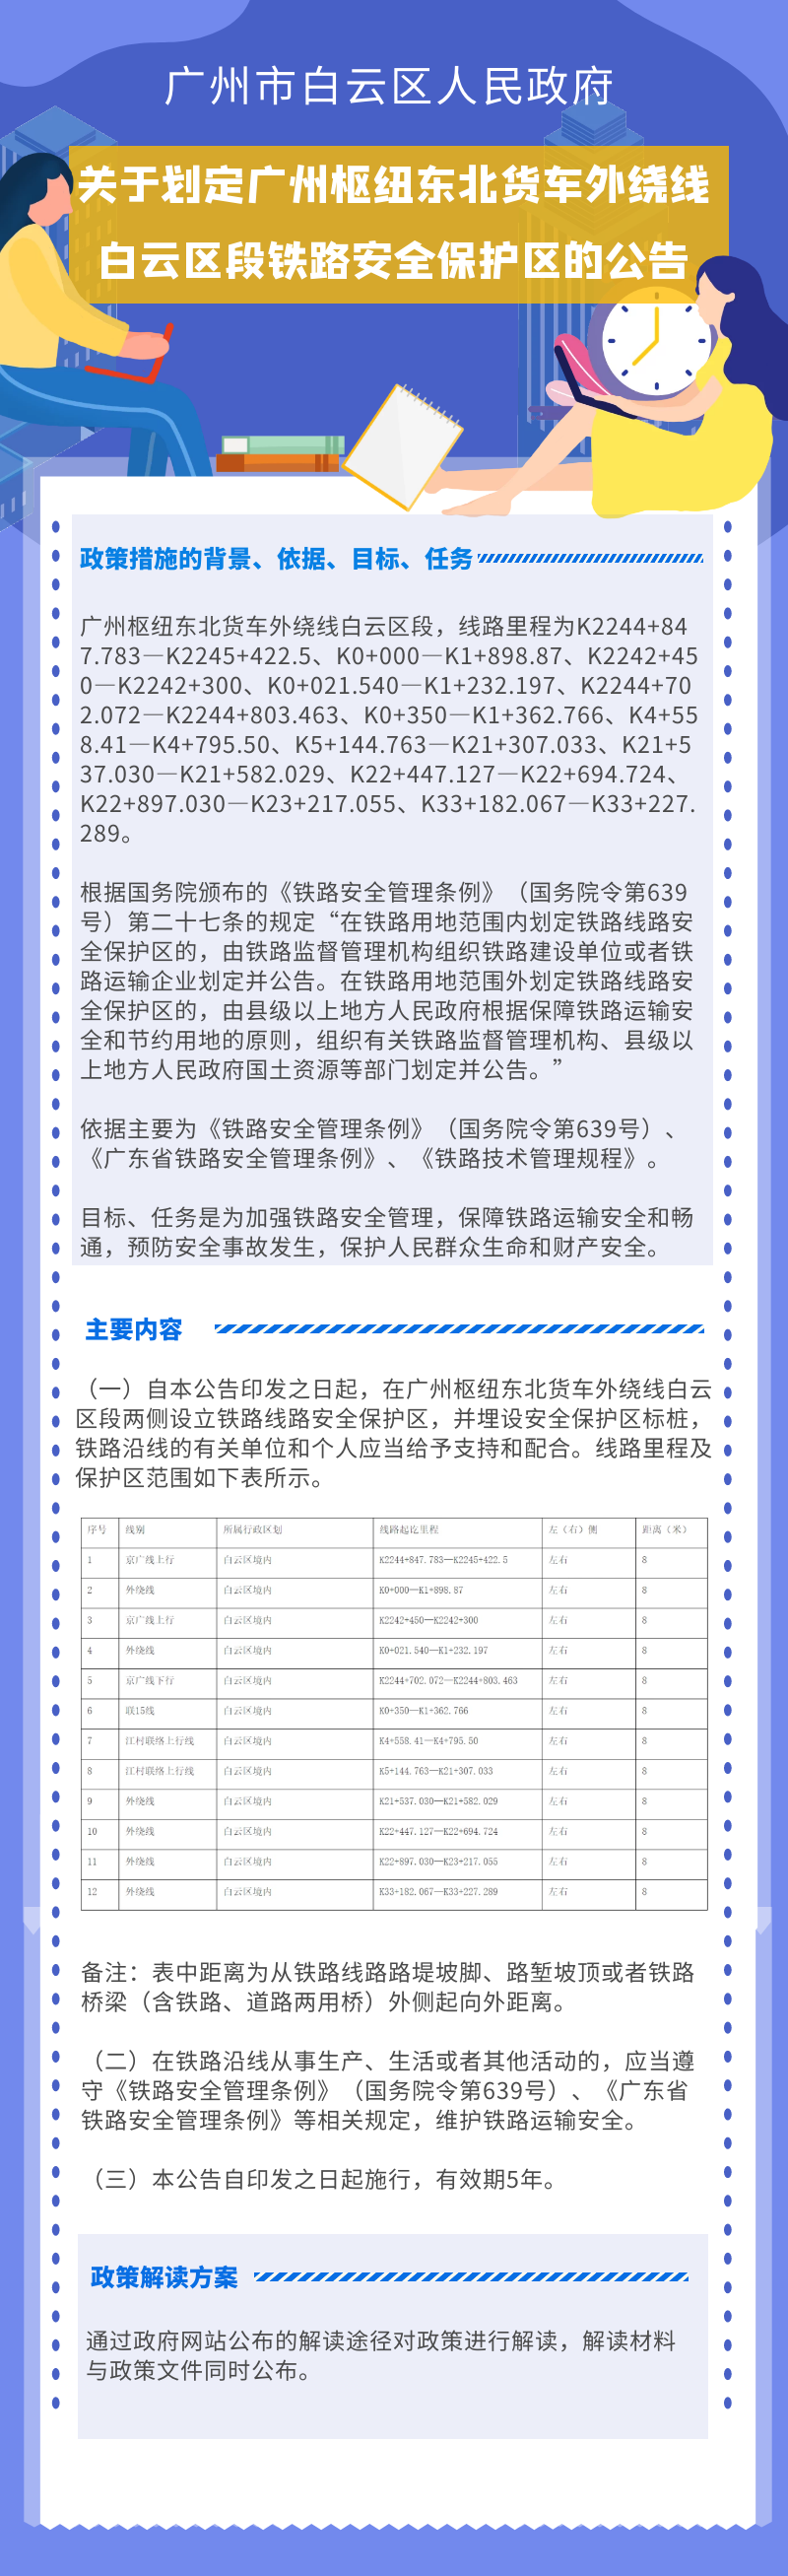 关于划定广州枢纽东北货车外绕线白云区段铁路安全保护区的公告.png